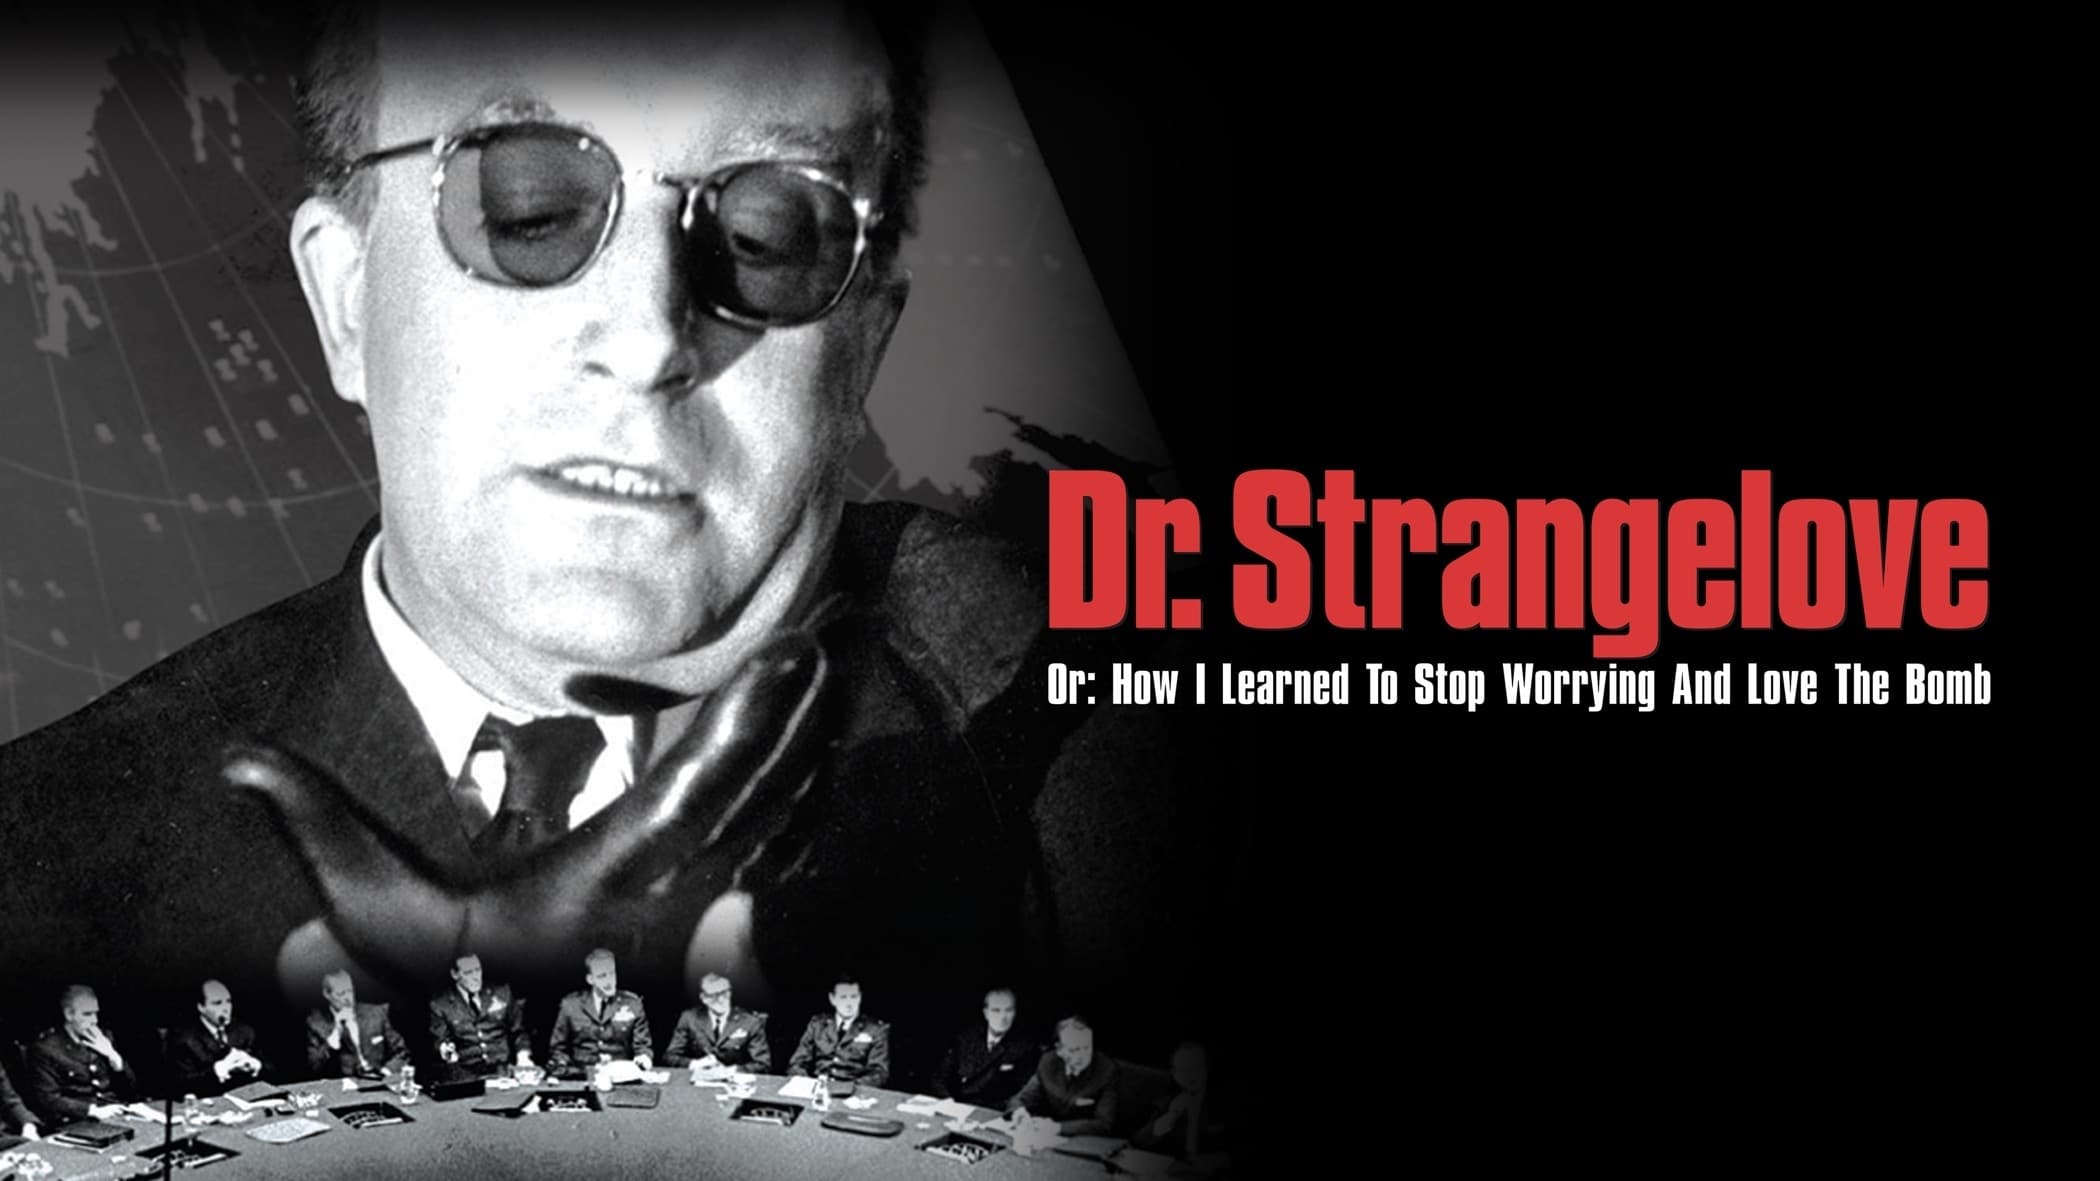 Dr. Strangelove sau: cum am învăţat să nu-mi mai fac griji şi să iubesc bomba (1964)